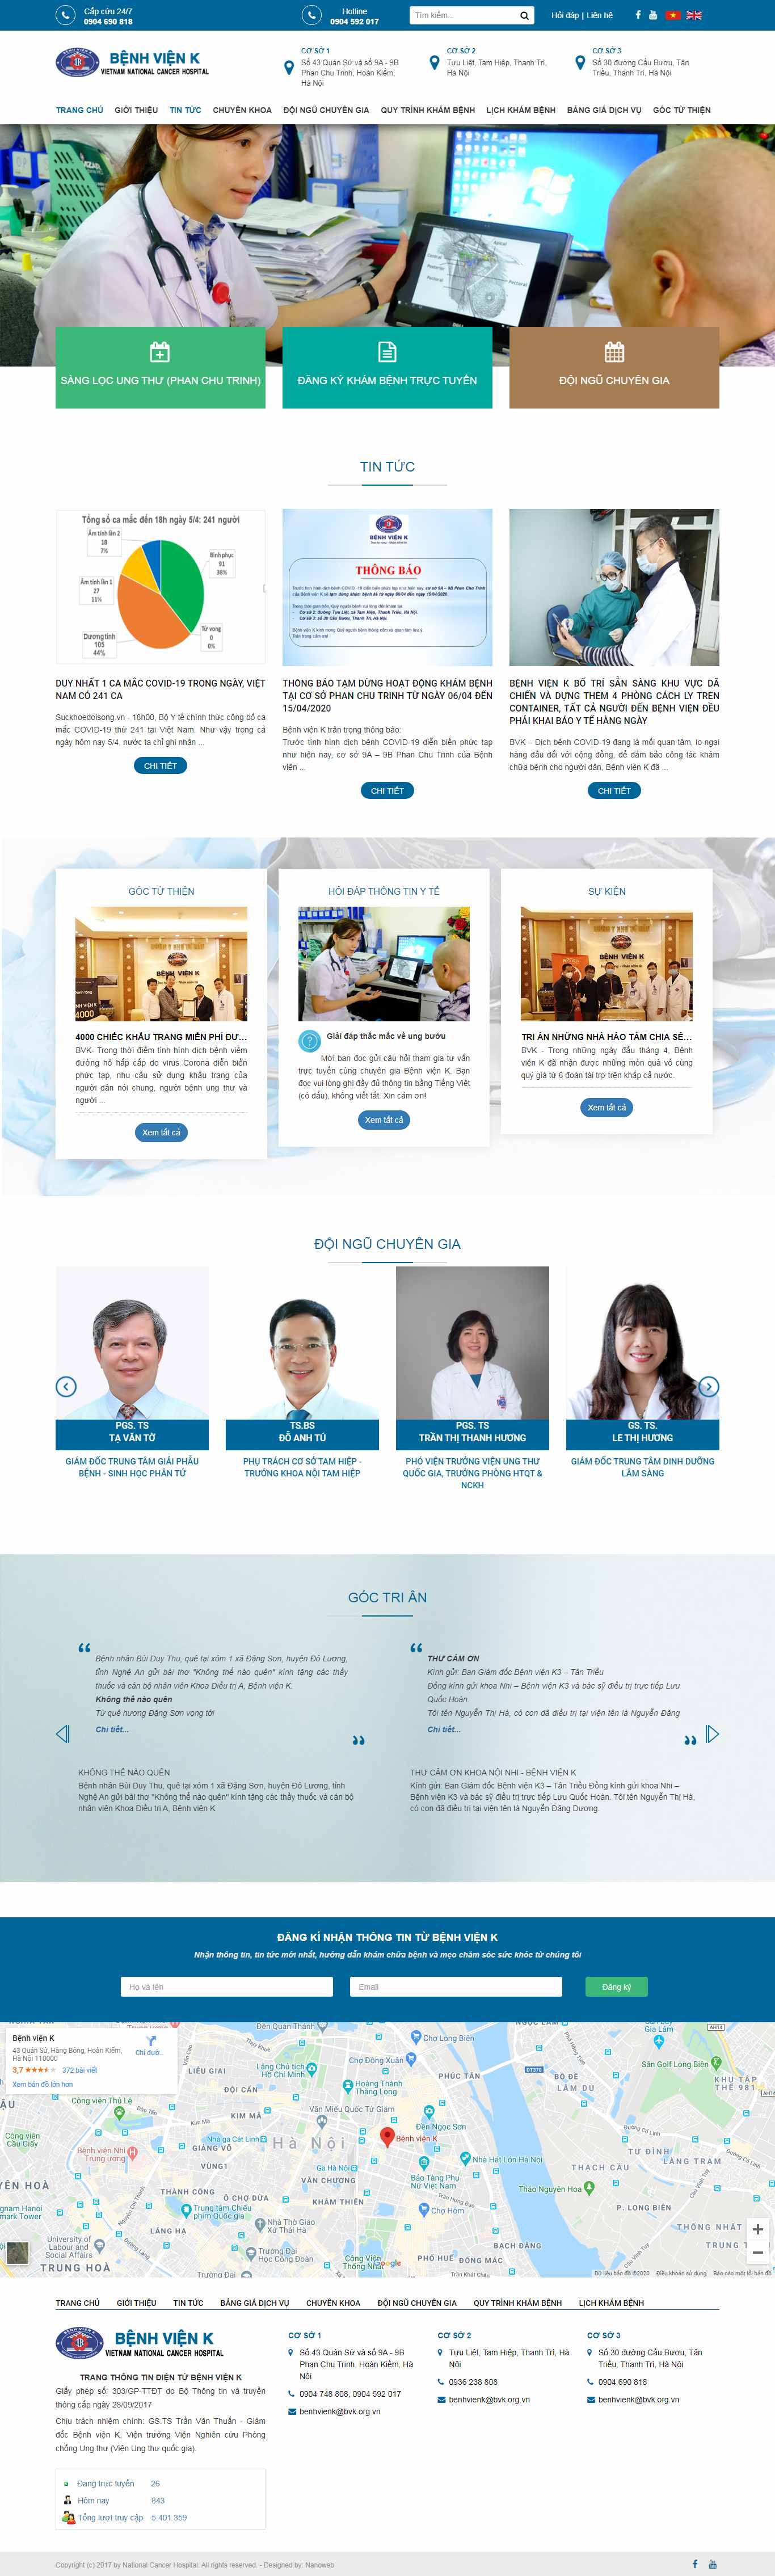 Thiết kế Website bệnh viện - benhvienk.vn